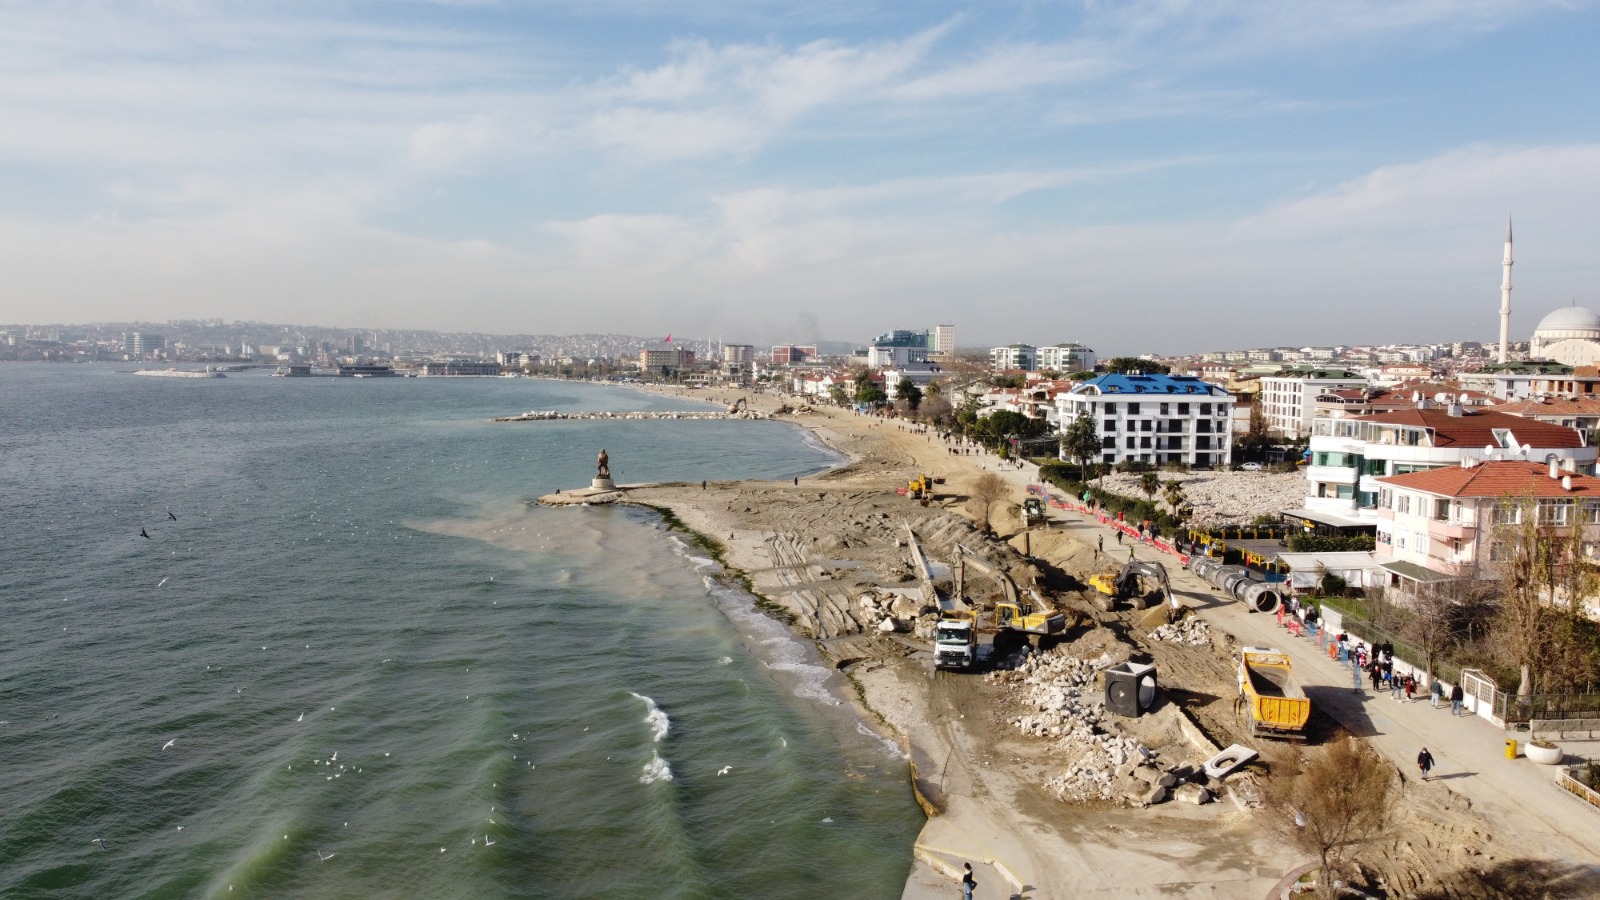 Büyükçekmece Koyu Marmara’nın en ayrıcalıklı sahili oluyor